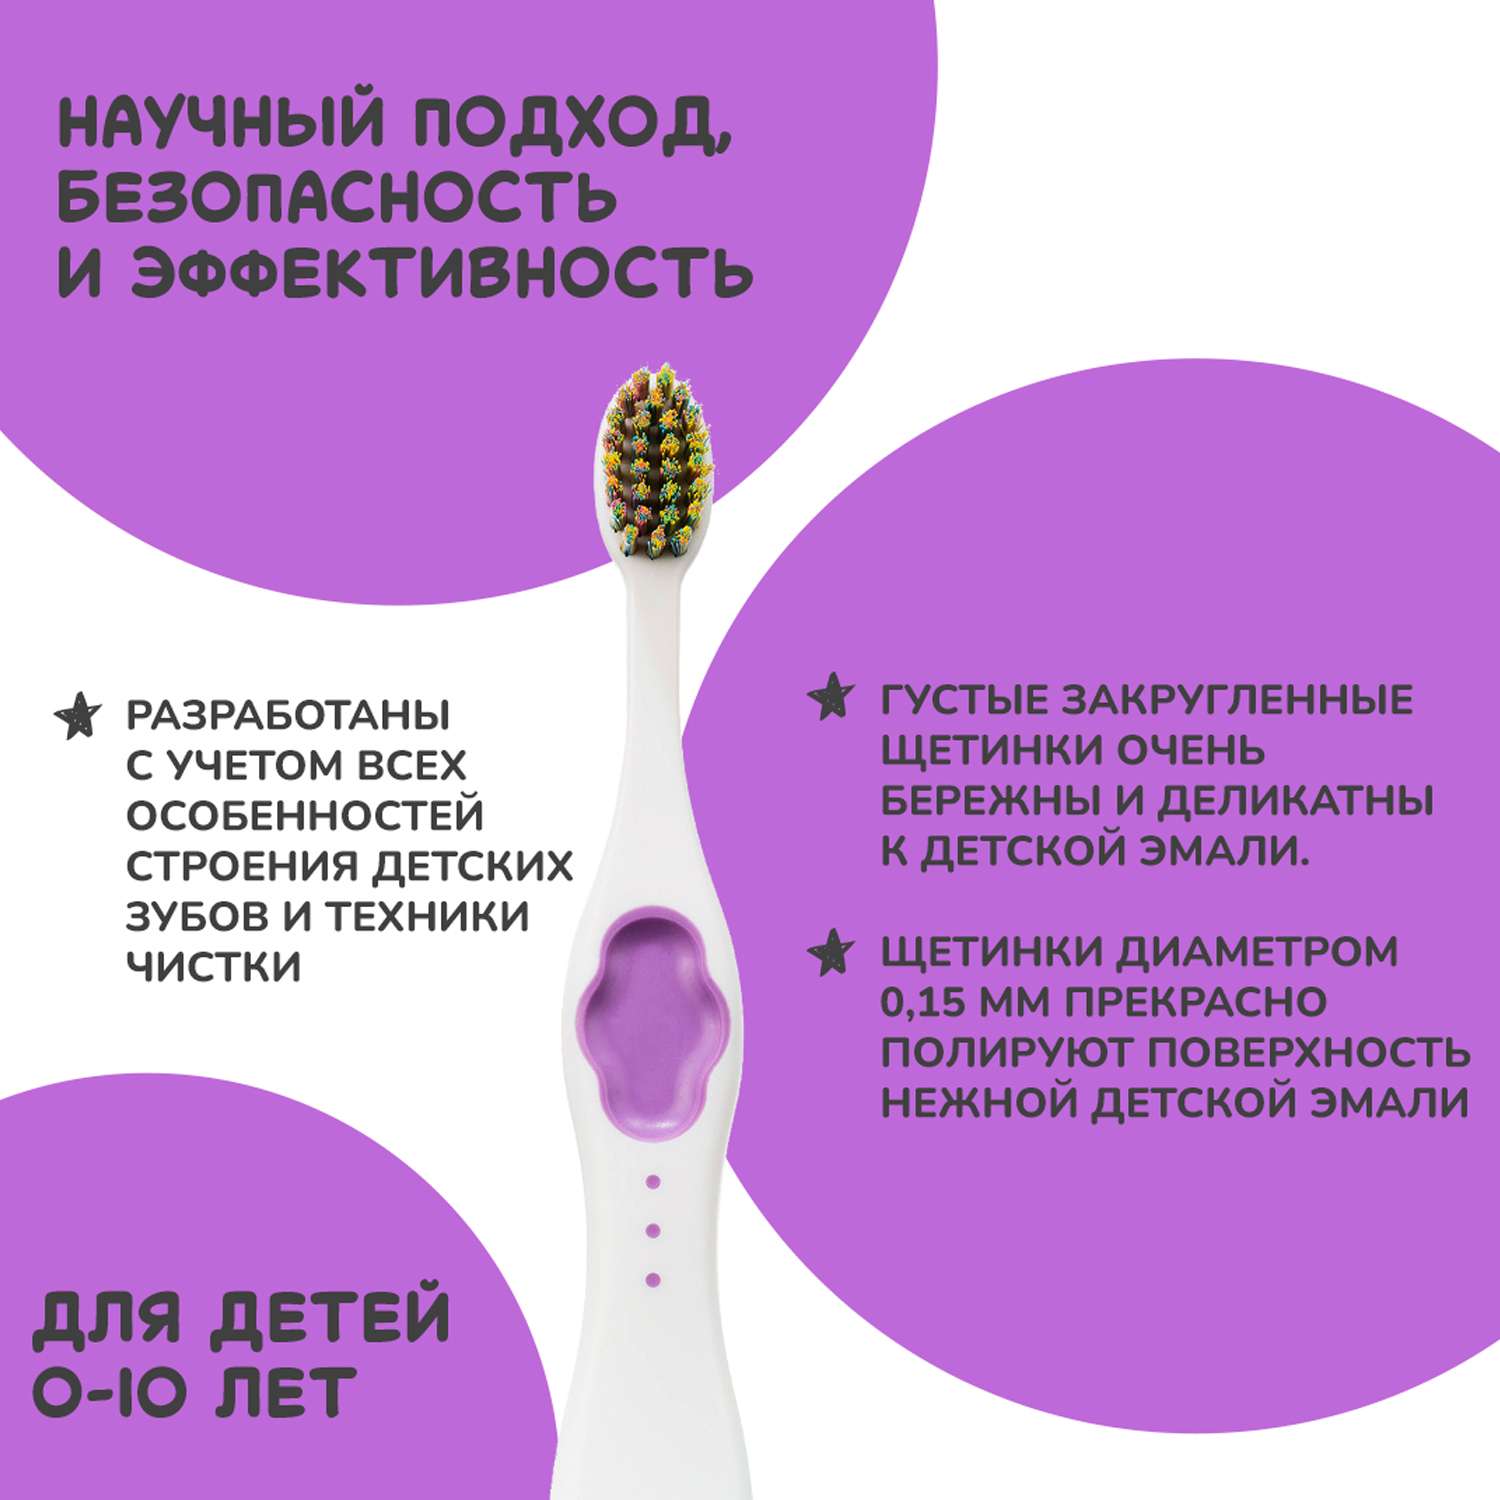 Подарочный набор Montcarotte гелеообразная зубная паста Ягодка Вишня + Зубная щетка Фиолетовая - фото 15